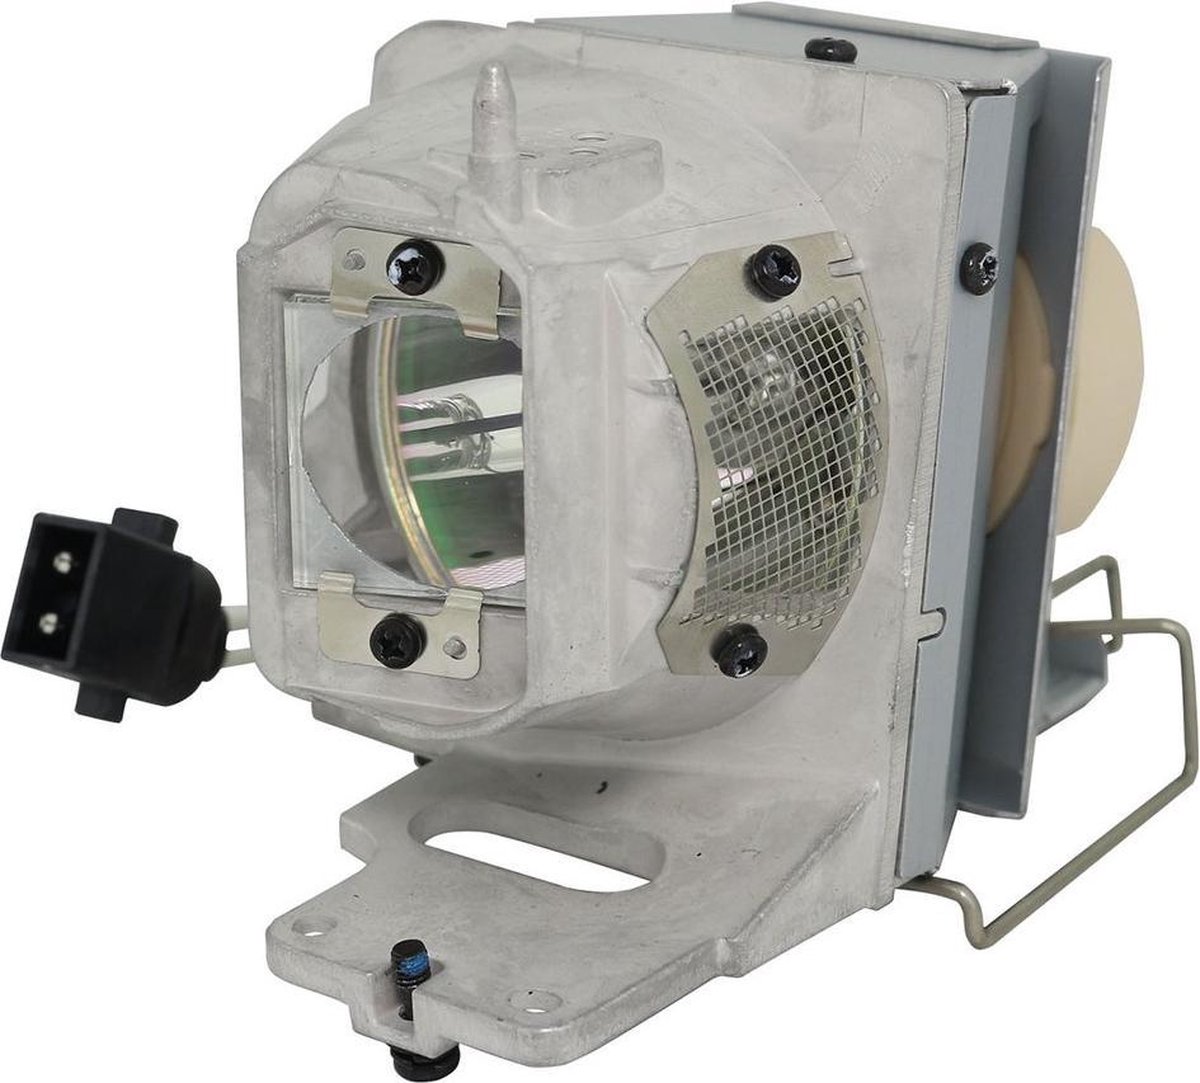 Beamerlamp geschikt voor de OPTOMA UHD51ALVe beamer, lamp code BL-FP240E / SP.78V01GC01. Bevat originele UHP lamp, prestaties gelijk aan origineel.